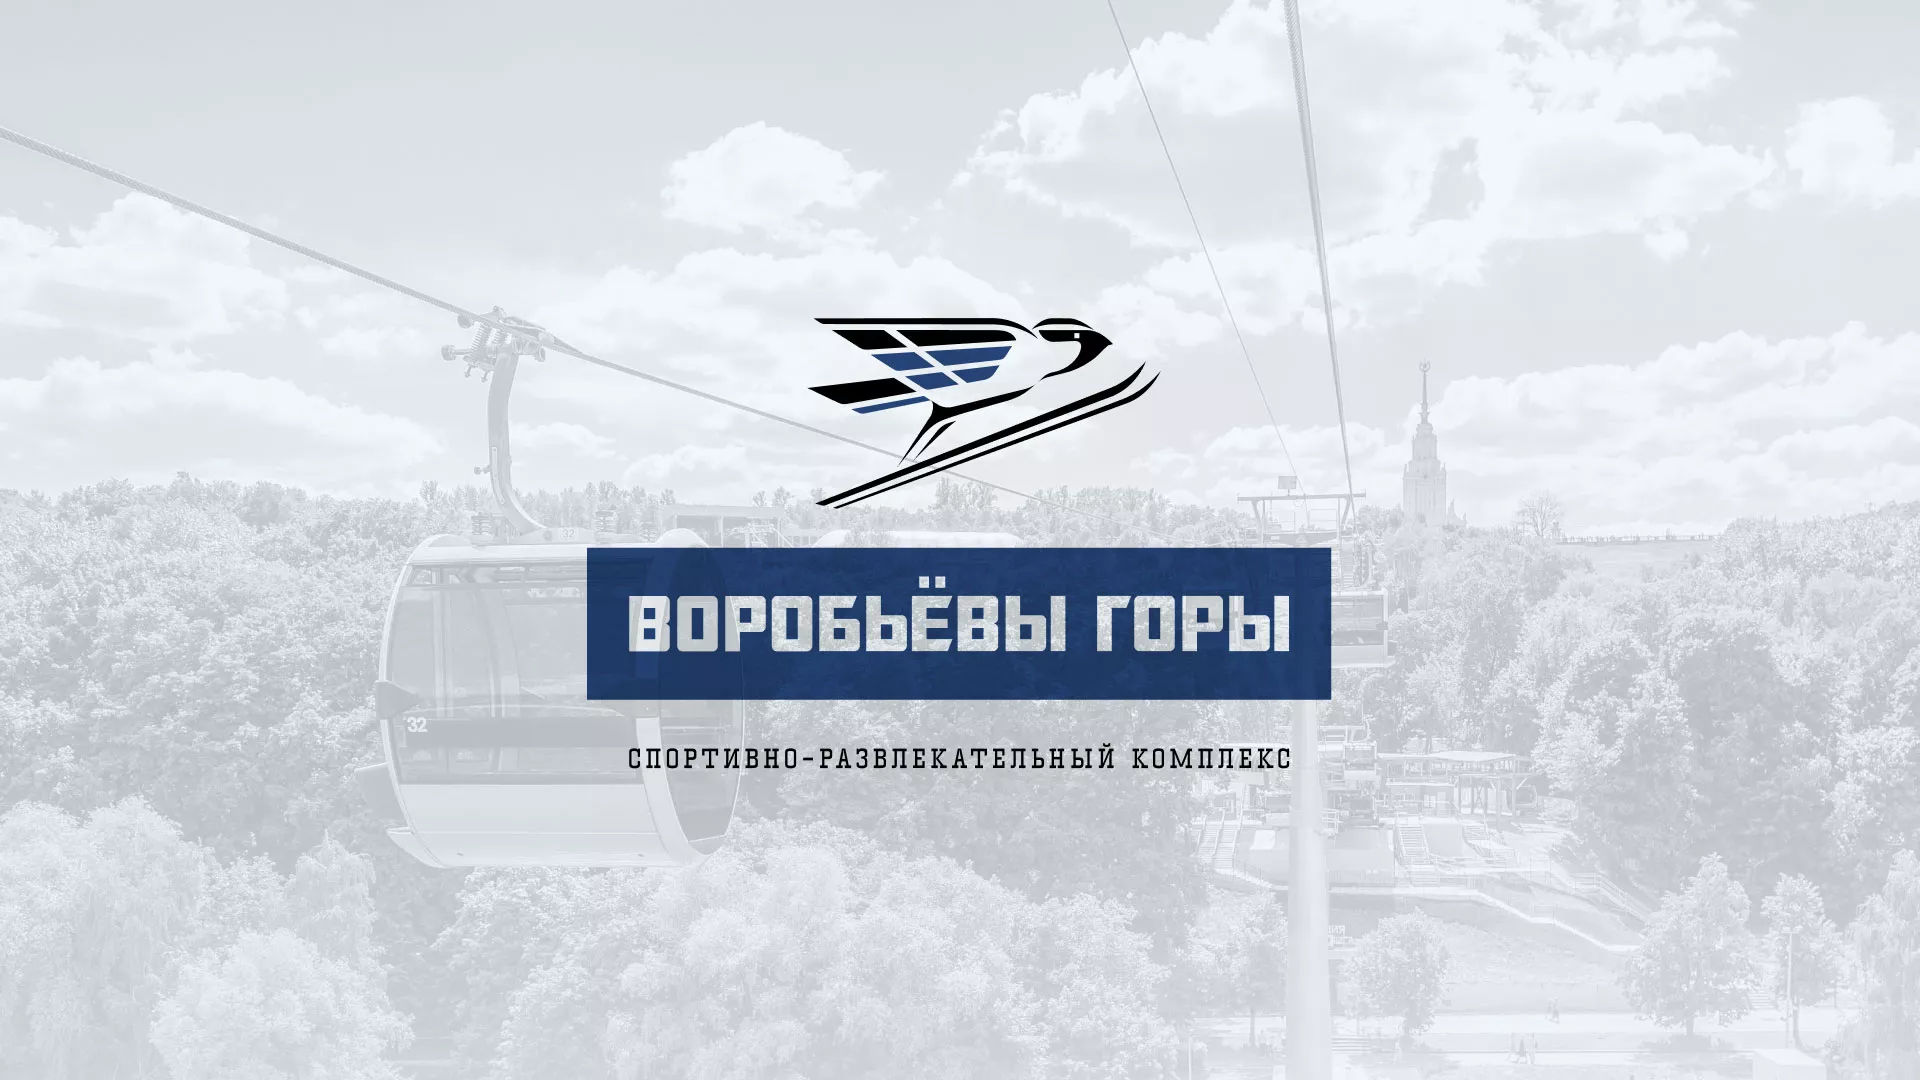 Разработка сайта в Называевске для спортивно-развлекательного комплекса «Воробьёвы горы»